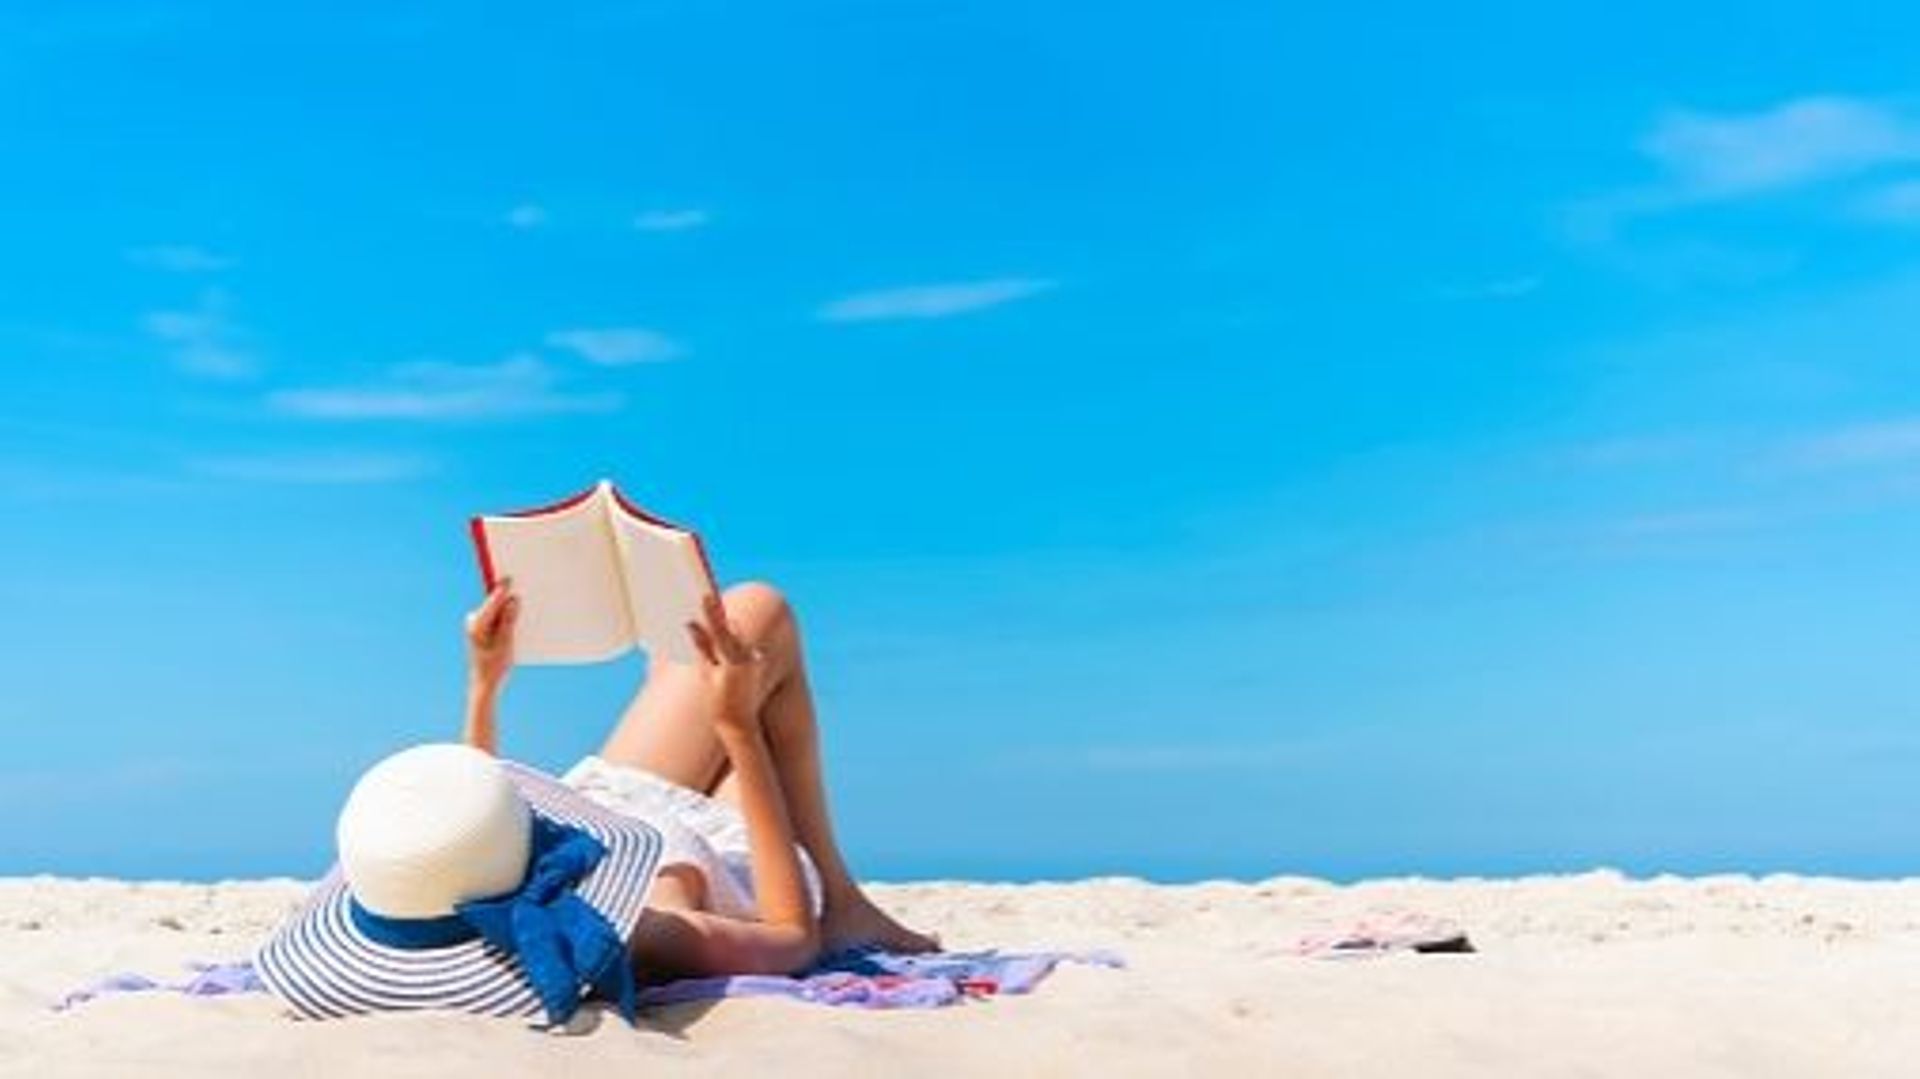 Lire sur la plage, c’est plus compliqué qu’on ne le pense ?